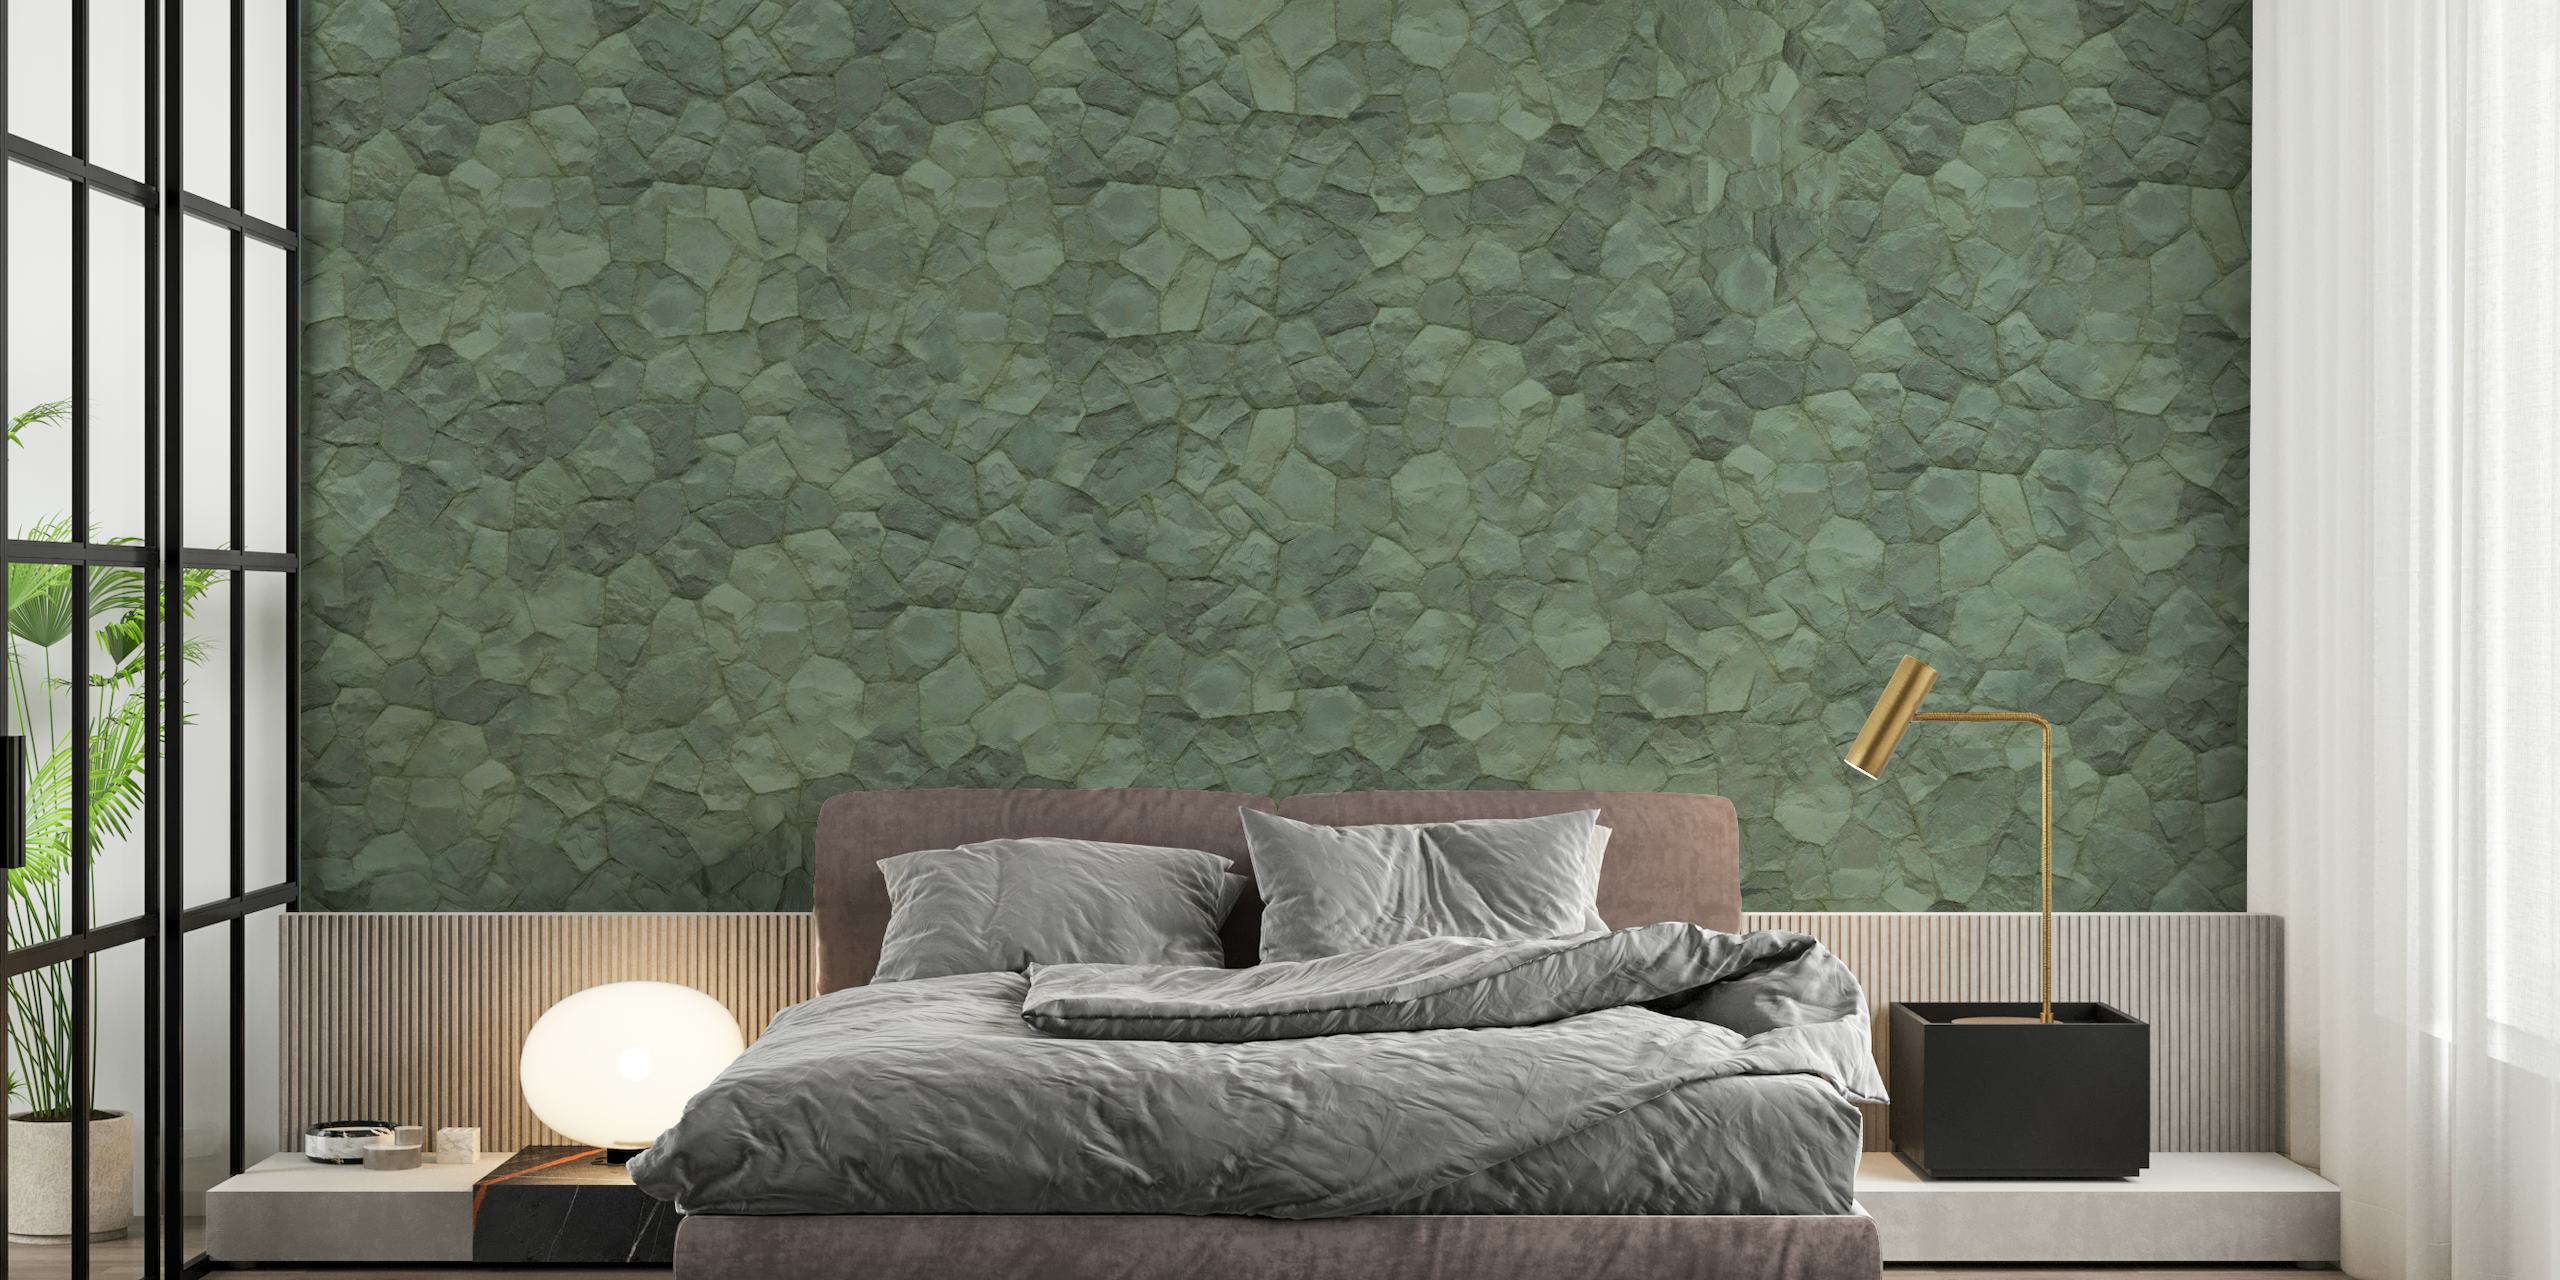 Papier peint texture pierre verte pour une ambiance intérieure sereine